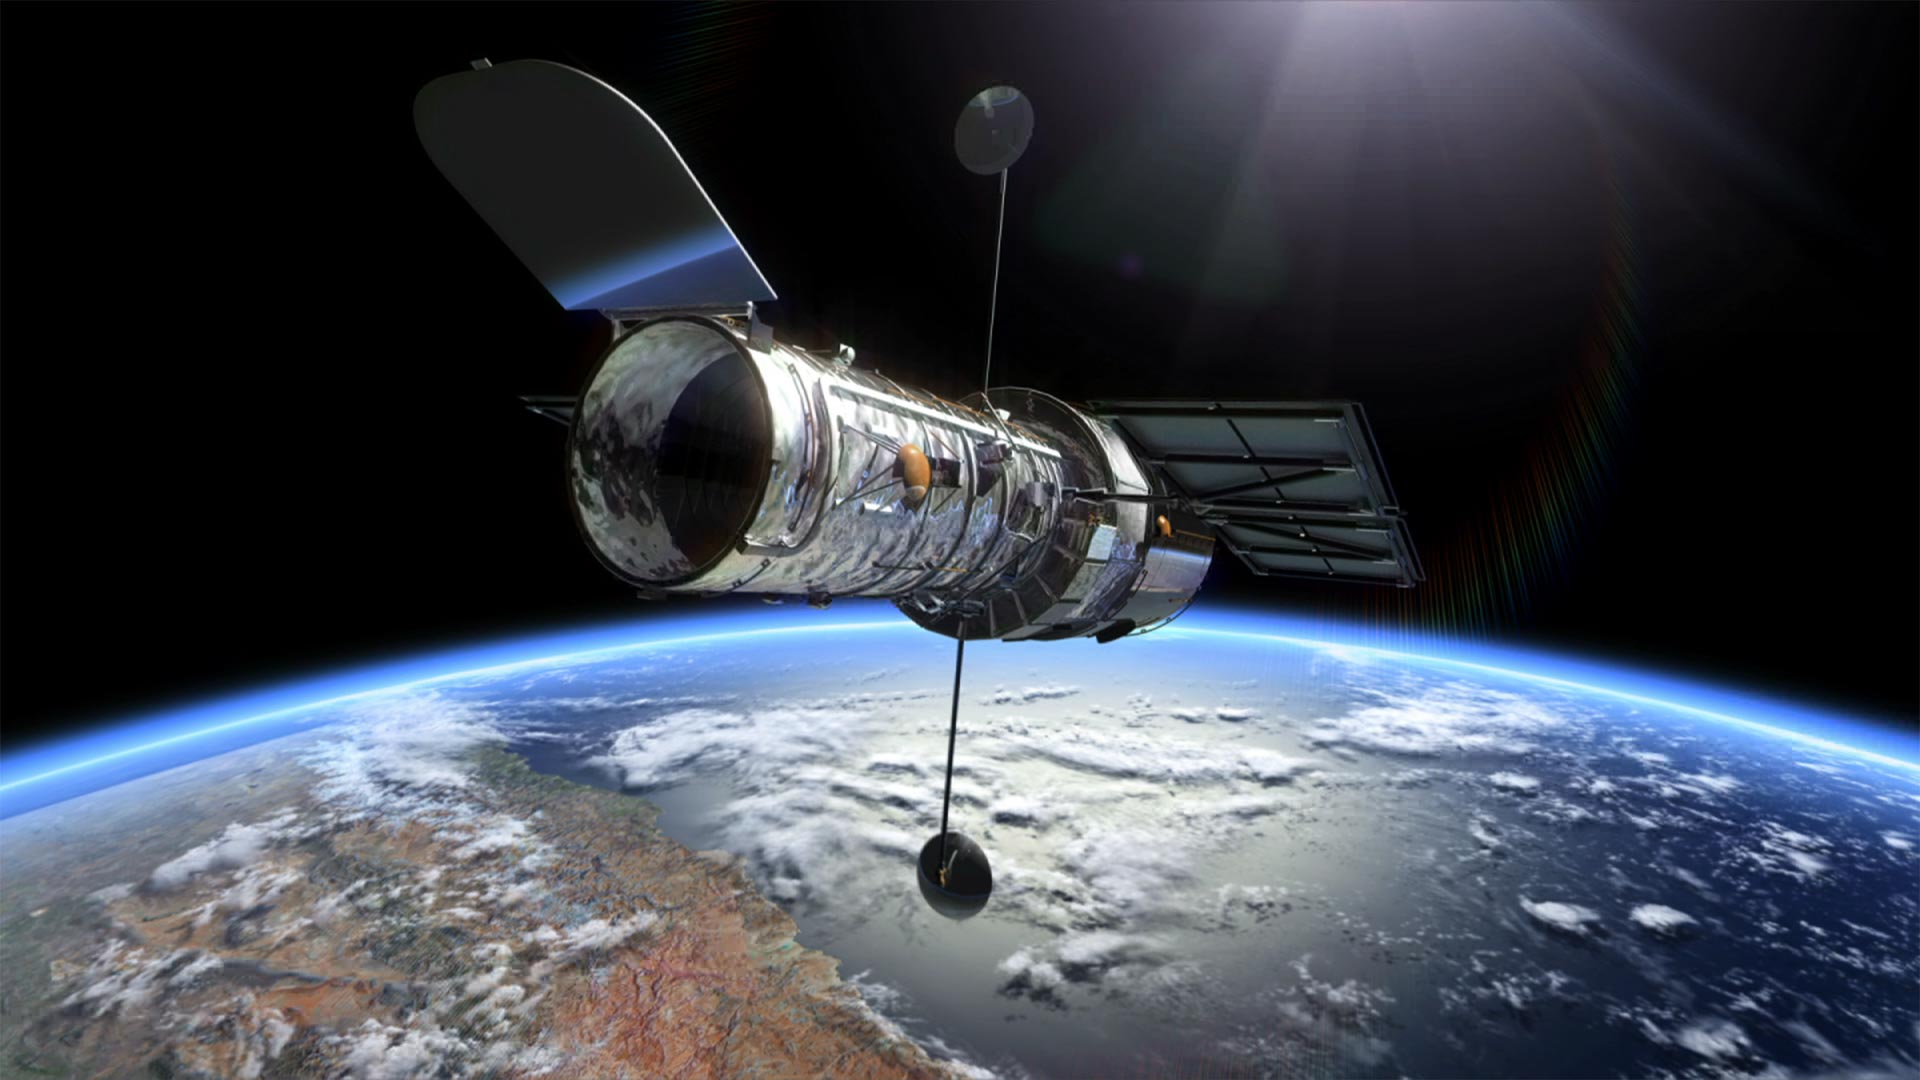 Récupération scientifique sur le télescope spatial Hubble après un problème de rotation